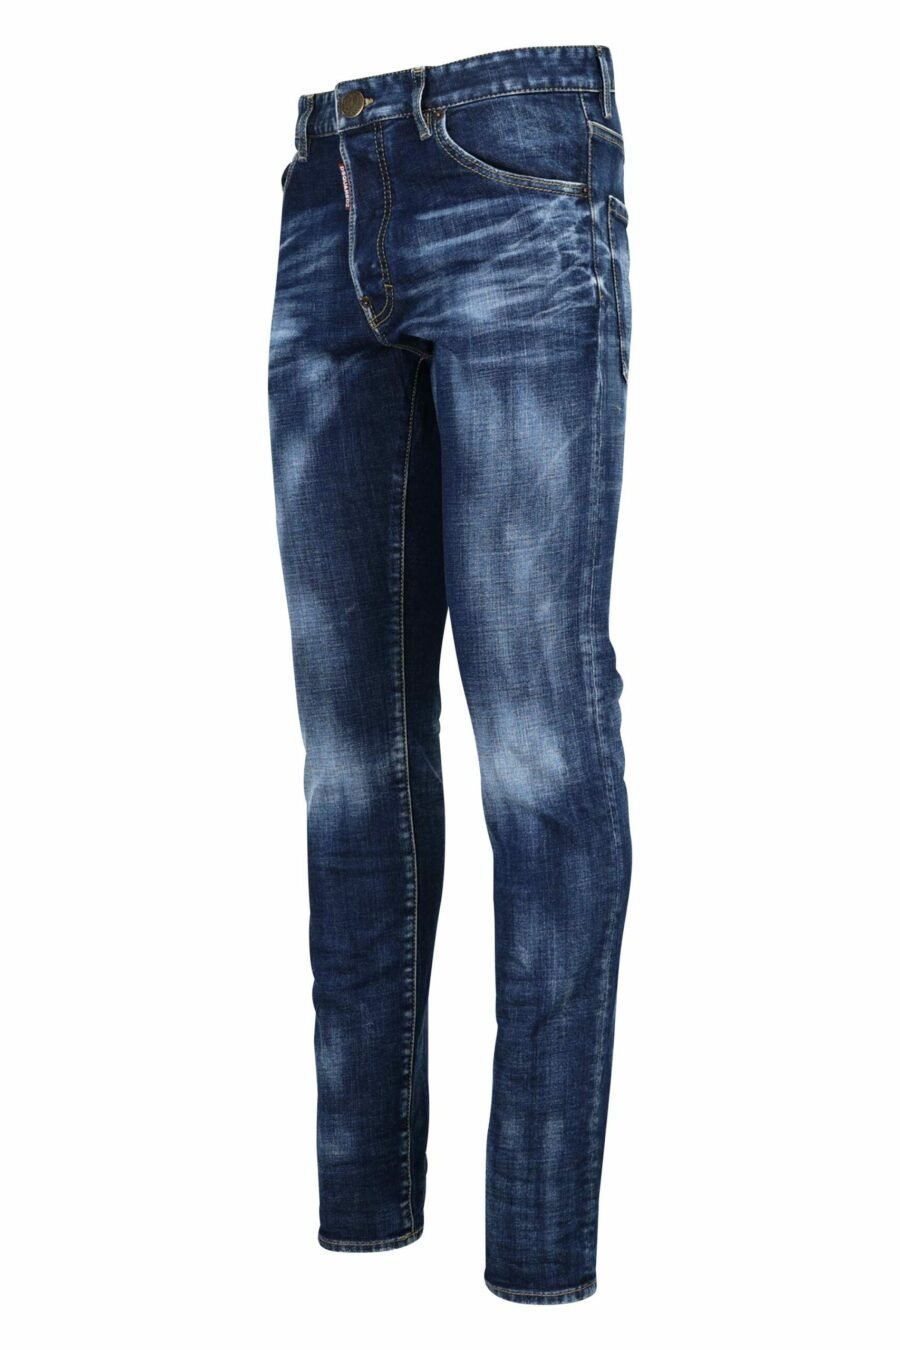 Pantalon en jean bleu effiloché - 8052134970072 1 scaled